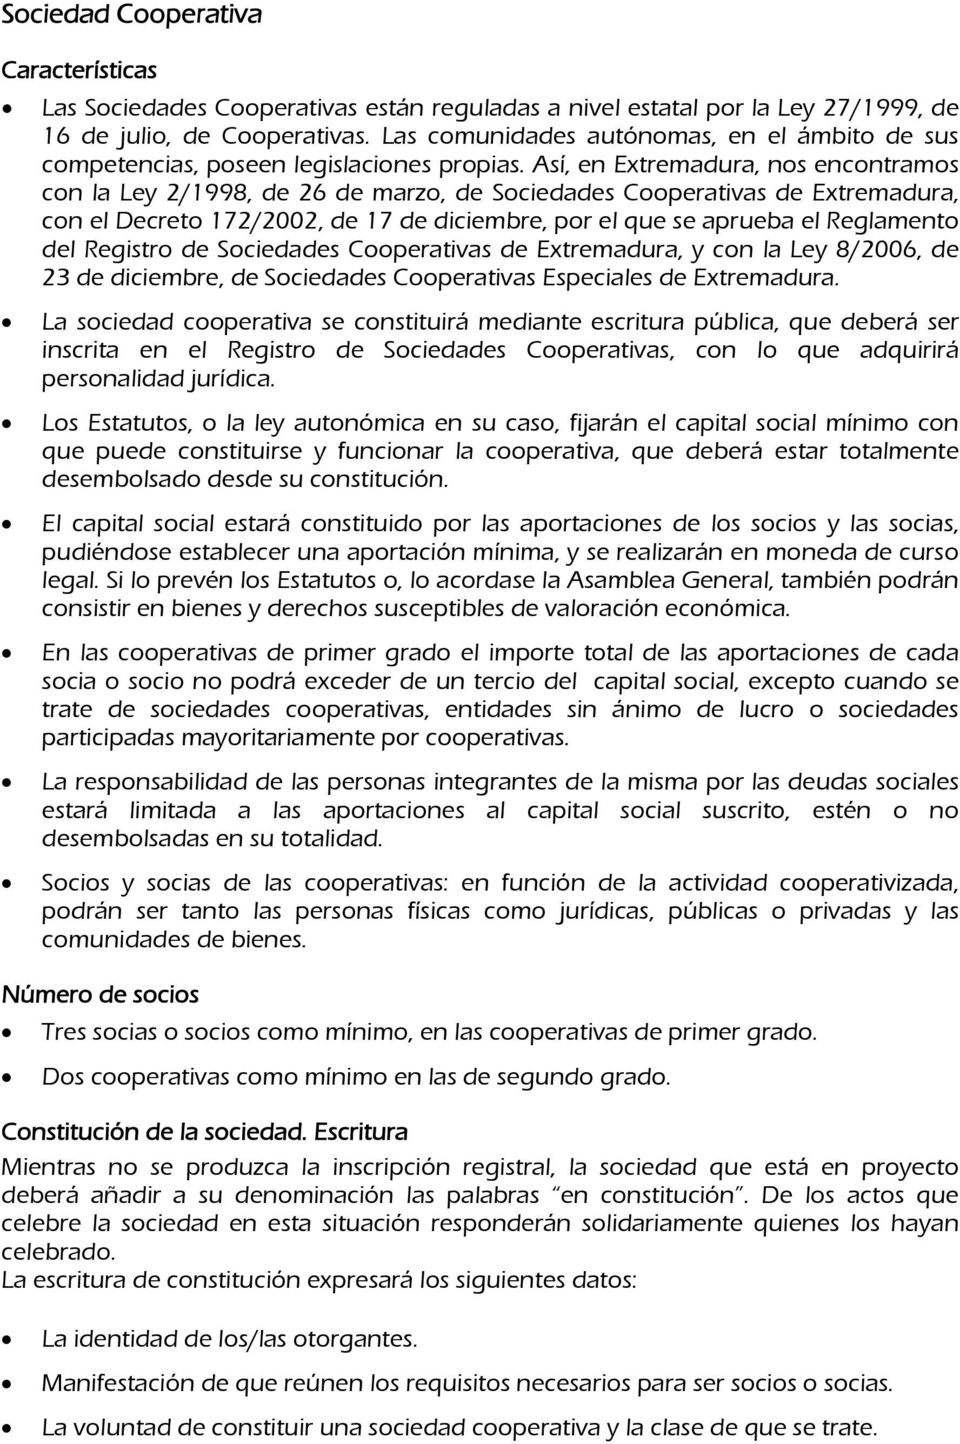 Así, en Extremadura, nos encontramos con la Ley 2/1998, de 26 de marzo, de Sociedades Cooperativas de Extremadura, con el Decreto 172/2002, de 17 de diciembre, por el que se aprueba el Reglamento del